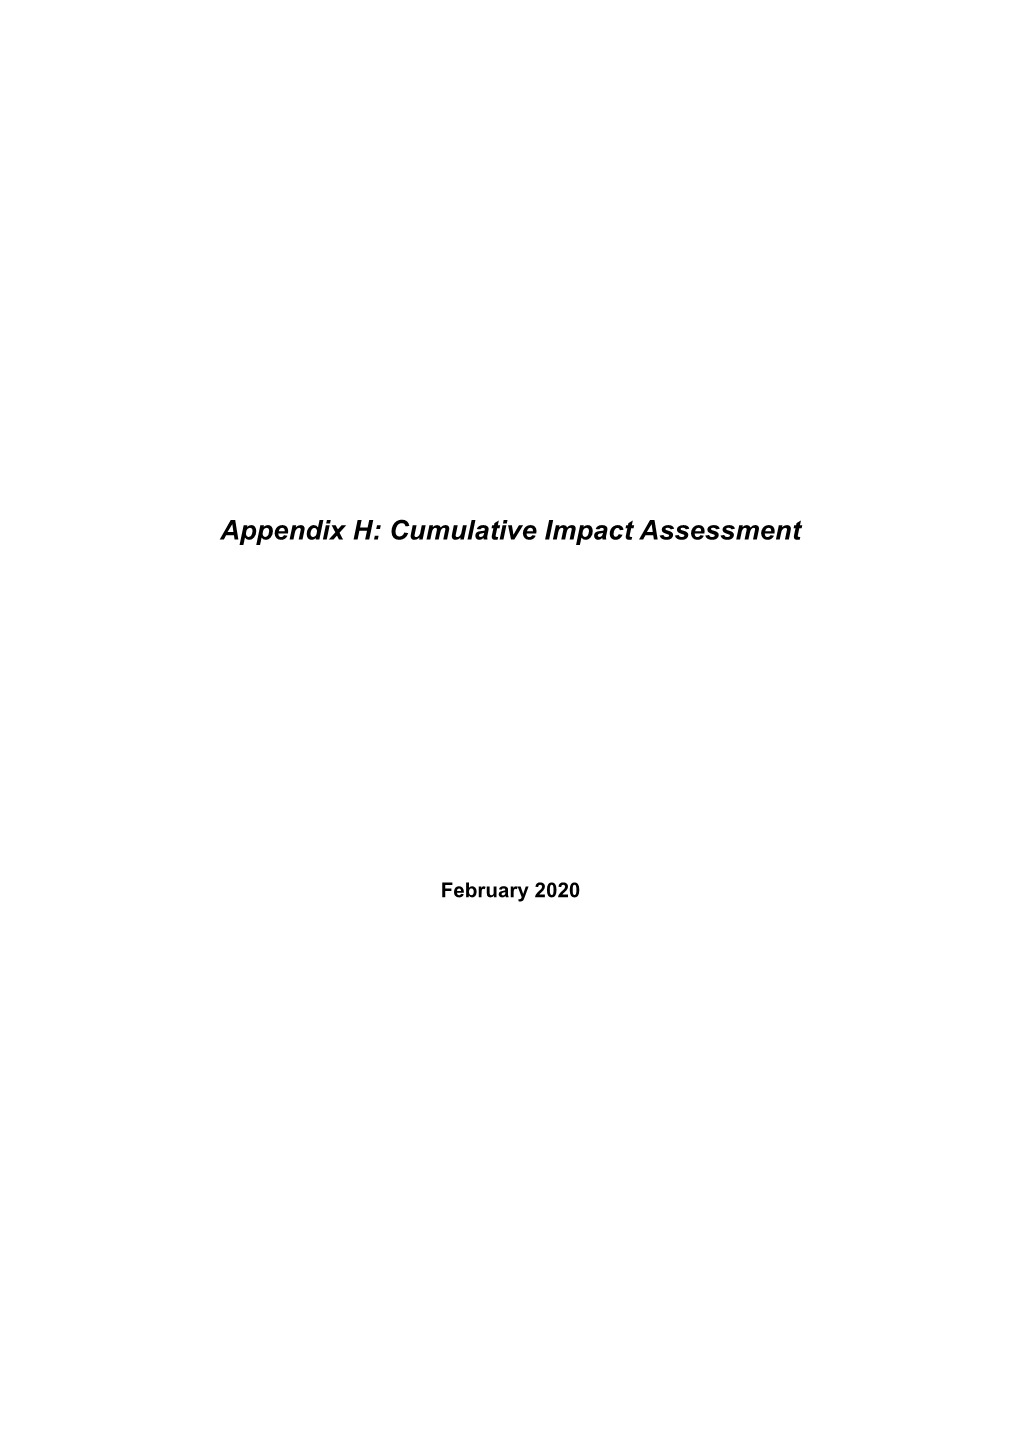 Appendix H Tilenga Feeder ESIA Cumulative Impacts Assessment.Pdf